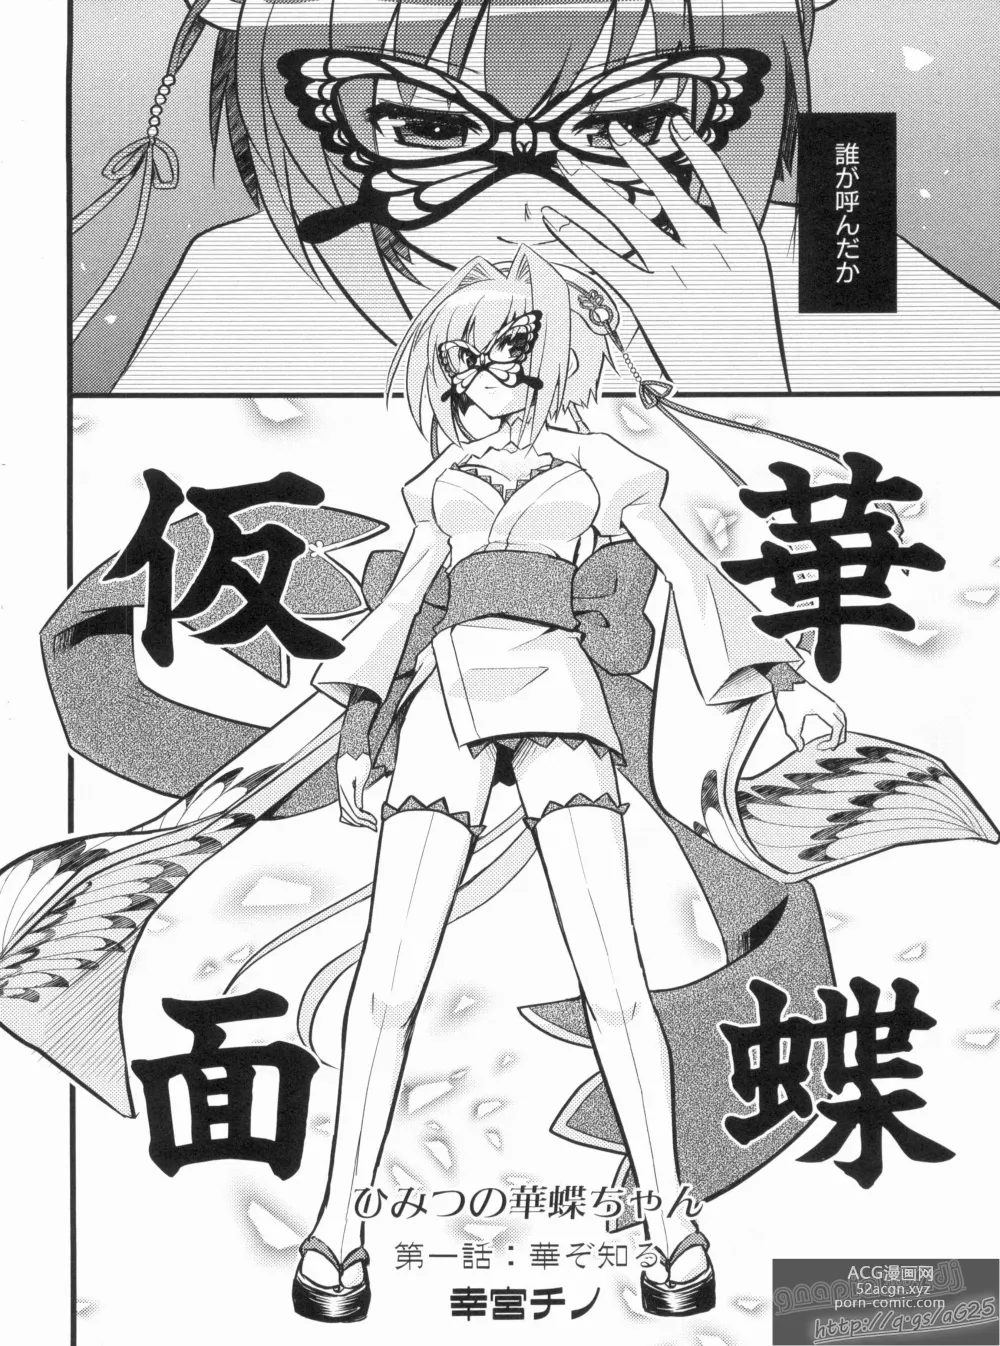 Page 8 of manga Shin Koihime Musou Gaishi Saiten VOL.1